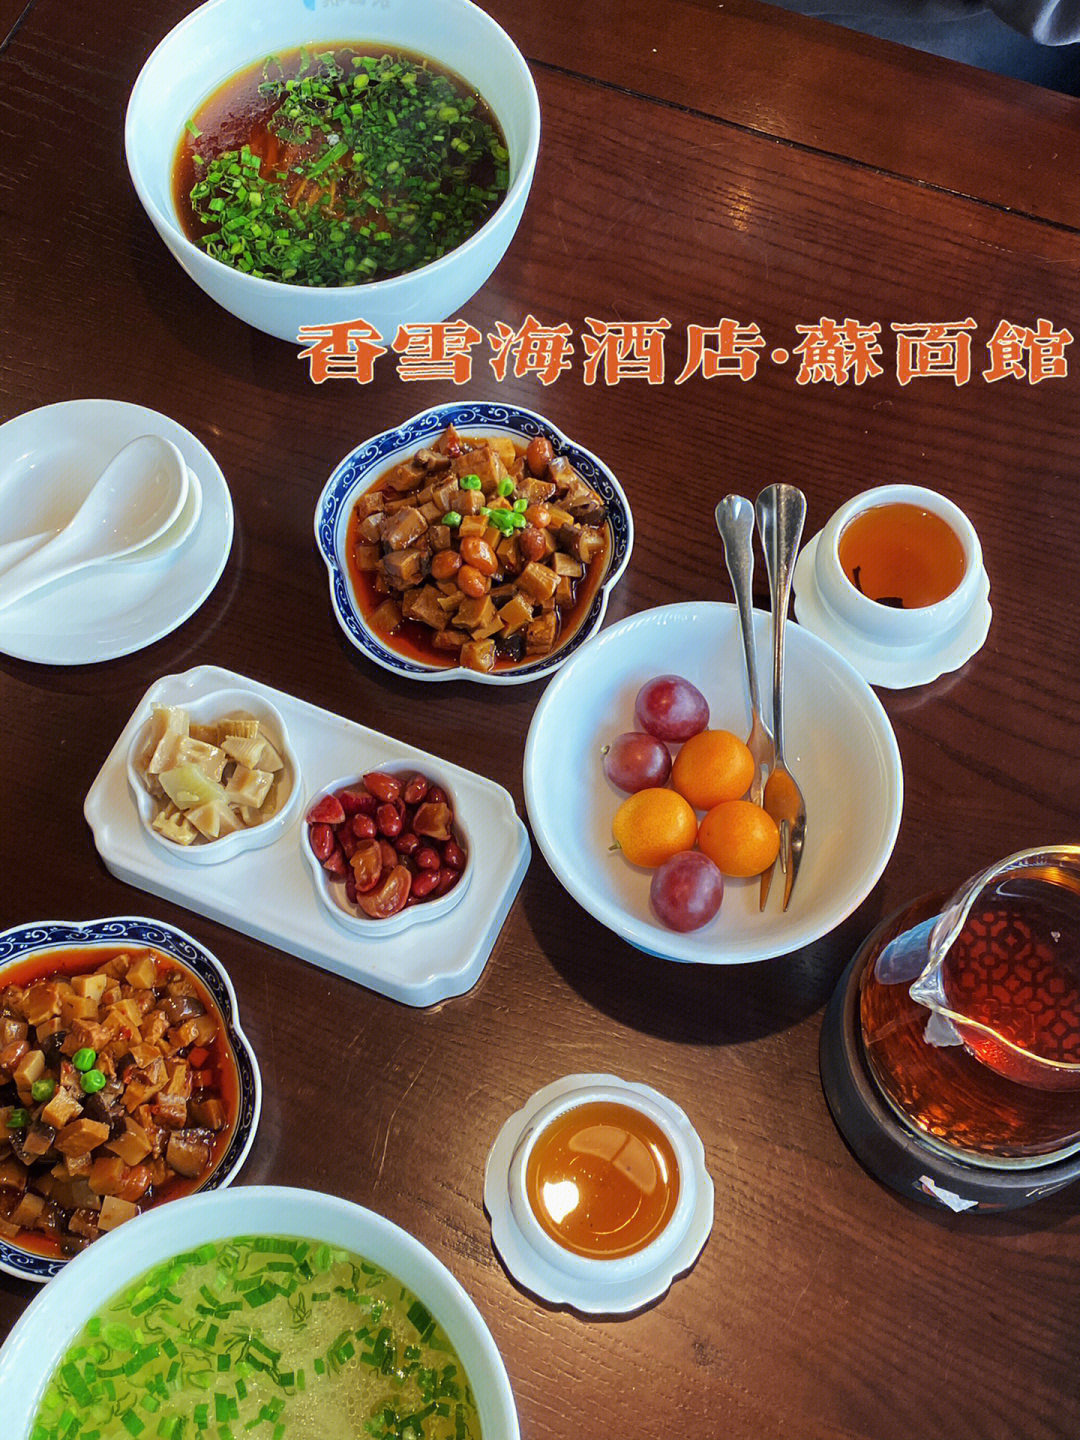 苏州香雪海菜单明细图片